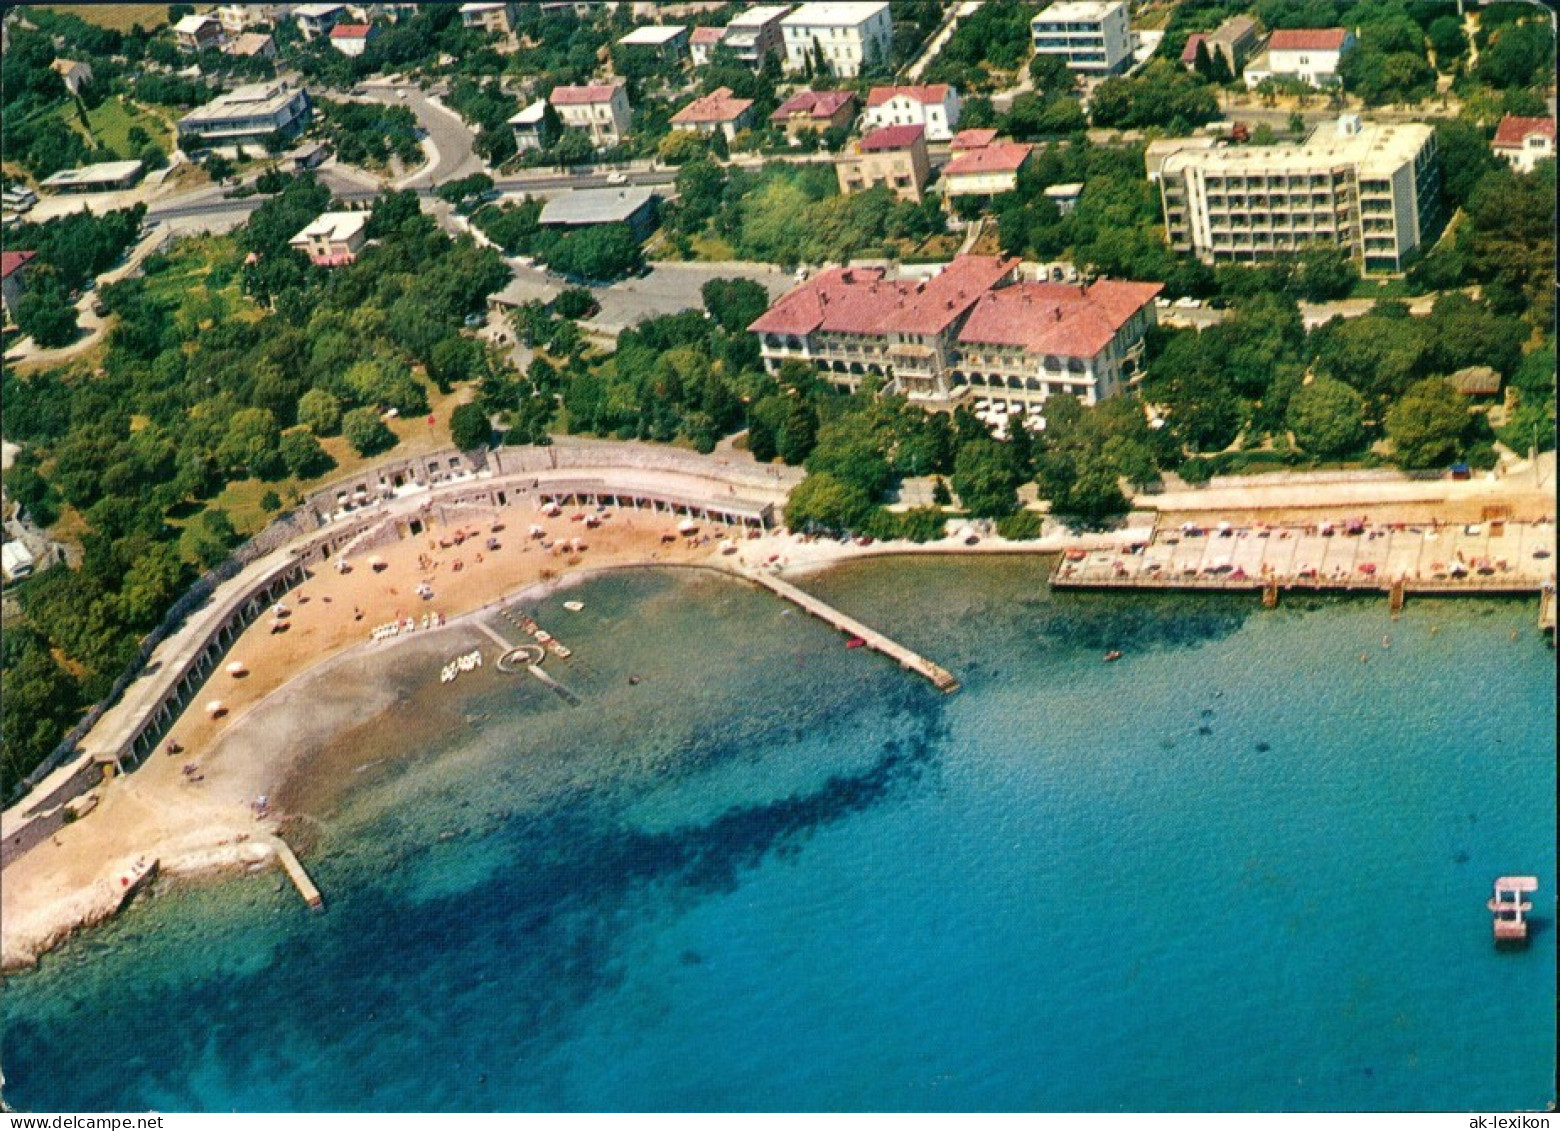 Postcard Novi Vinodolski Luftbild 1978 - Croatie